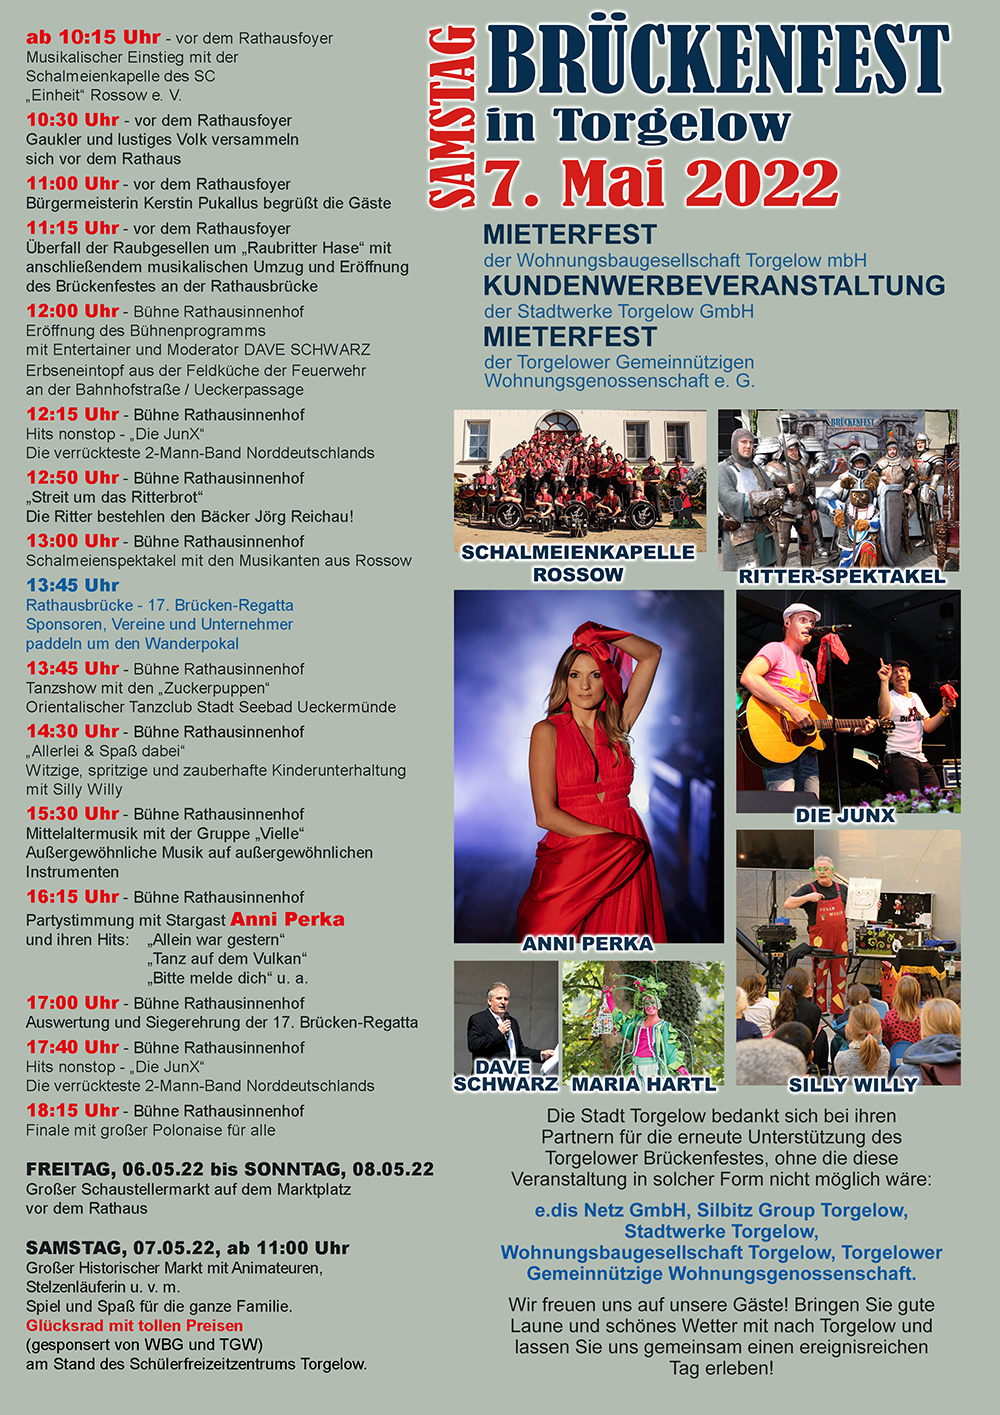 Brückenfest: Torgelow lädt zum Ritterspektakel mit viel Programmadminam 3. Mai 2022 um 10:09 Uecker Randow